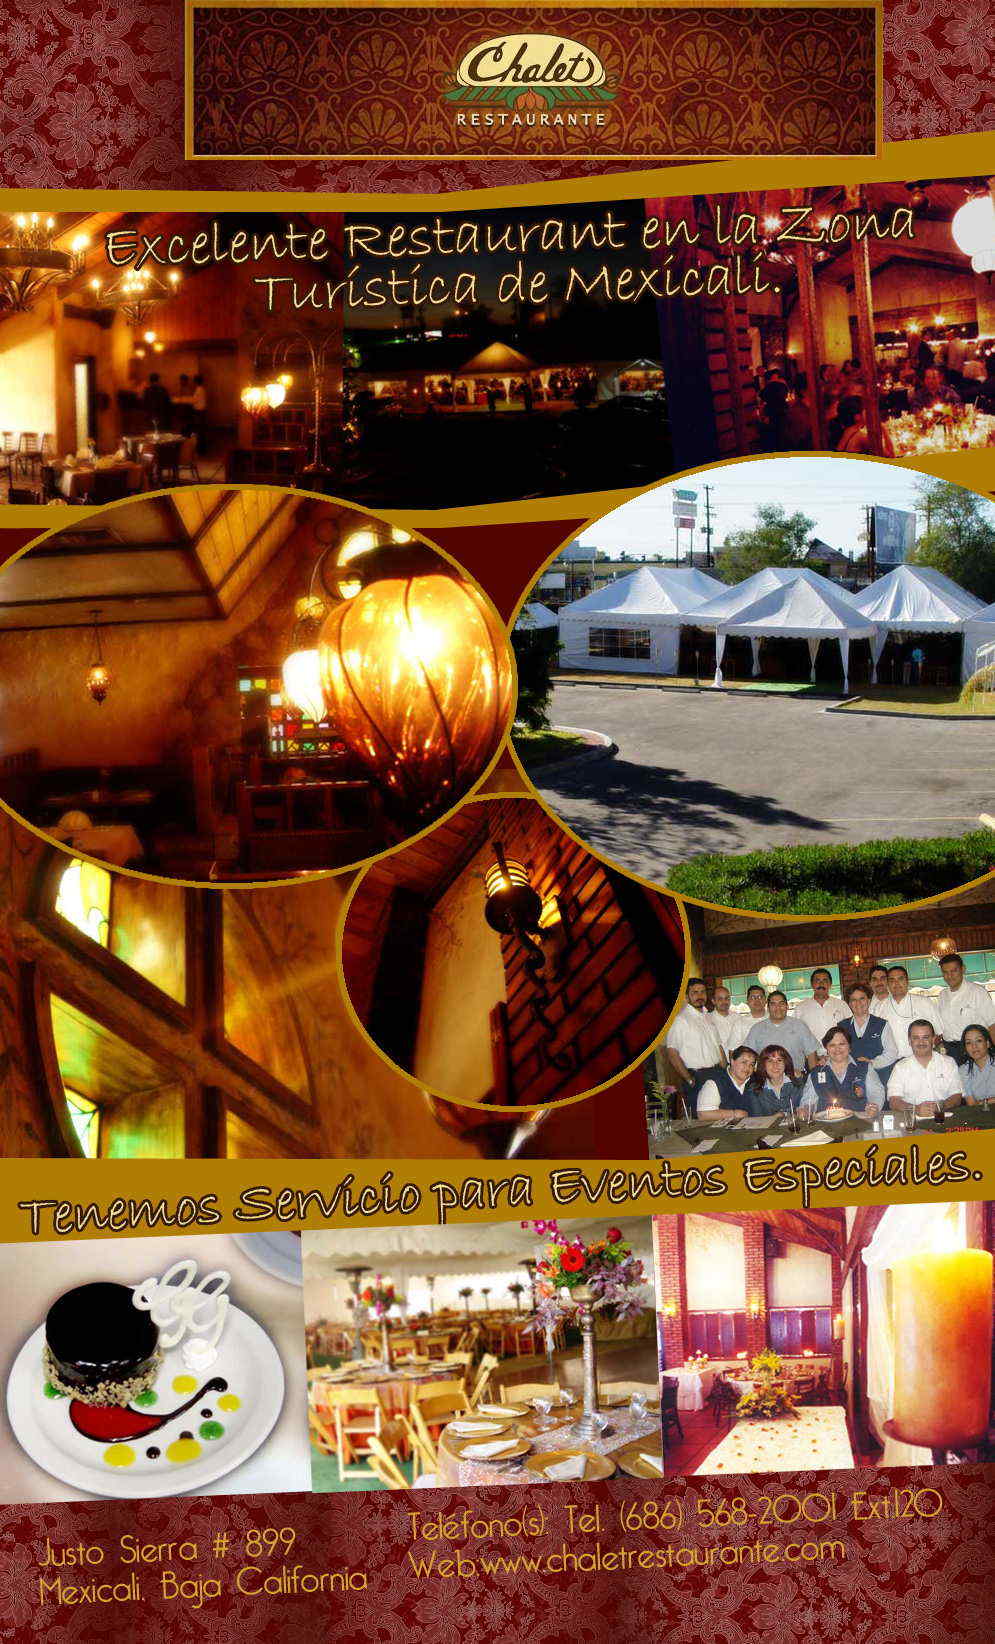 Chalet Restaurante-Excelente Restaurant en la Zona Turística de Mexicali. Tenemos Servicio para Eventos Especiales.    